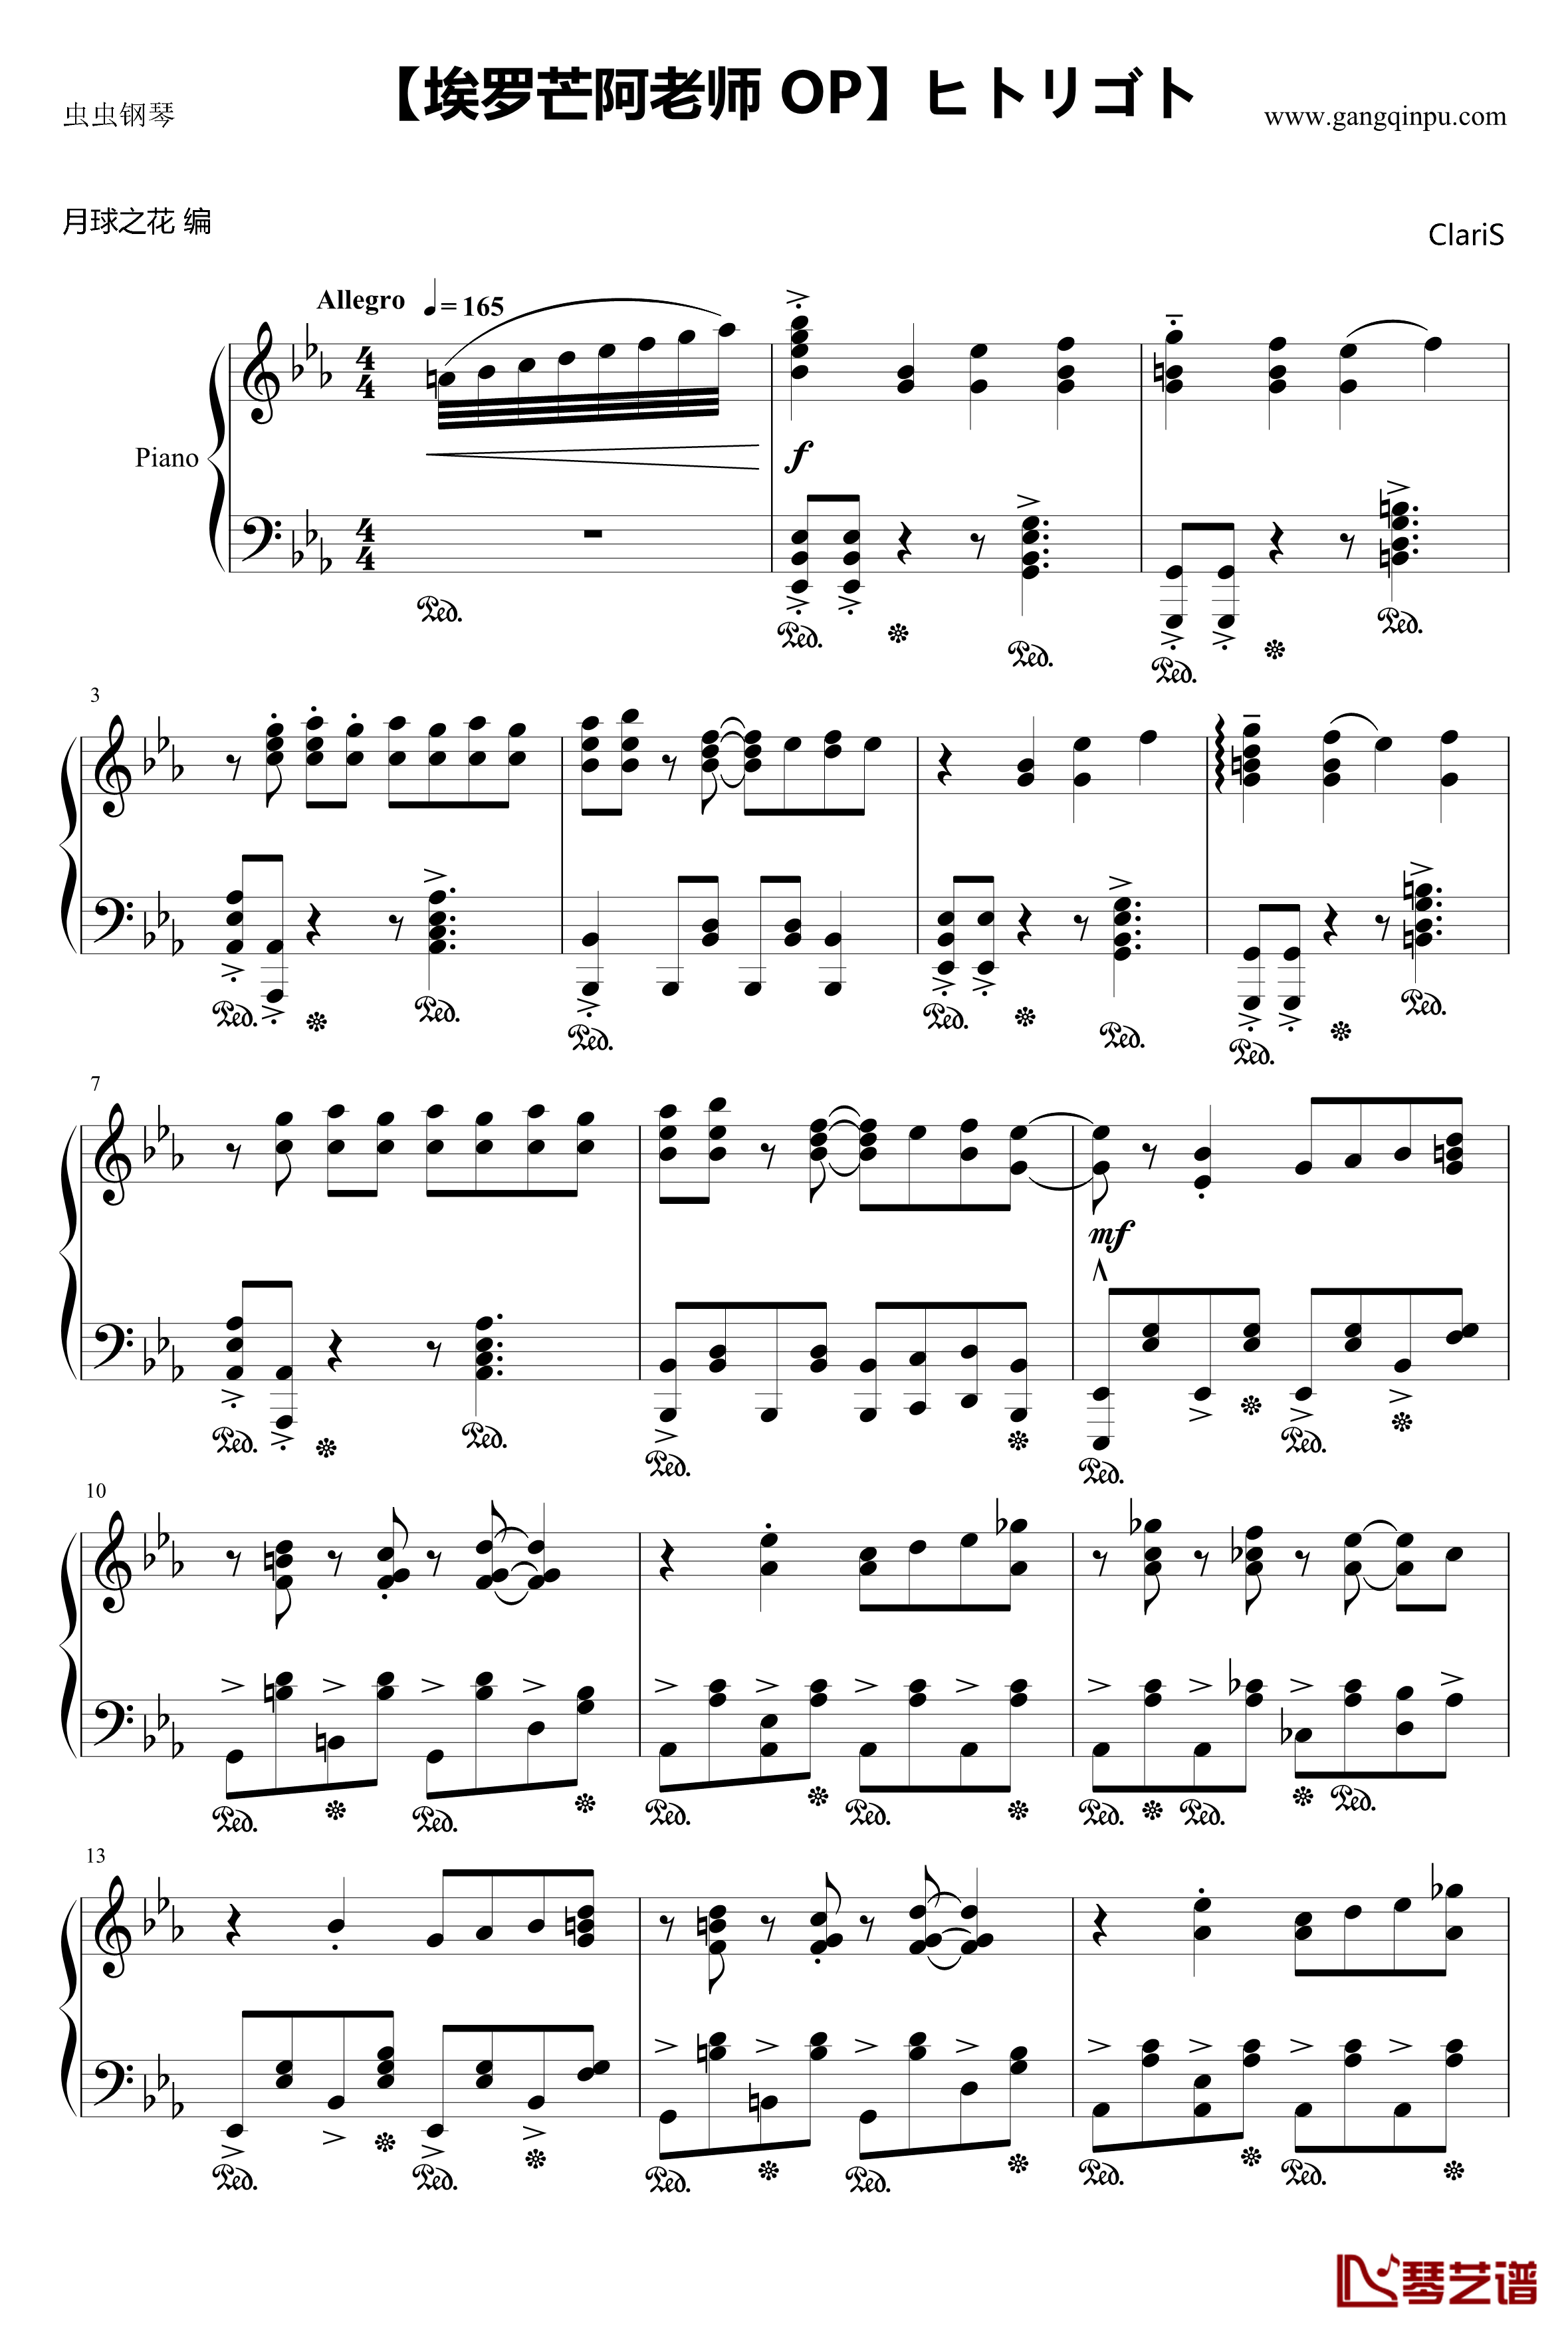 ヒトリゴト钢琴谱-埃罗芒阿老师 OP-ClariS1